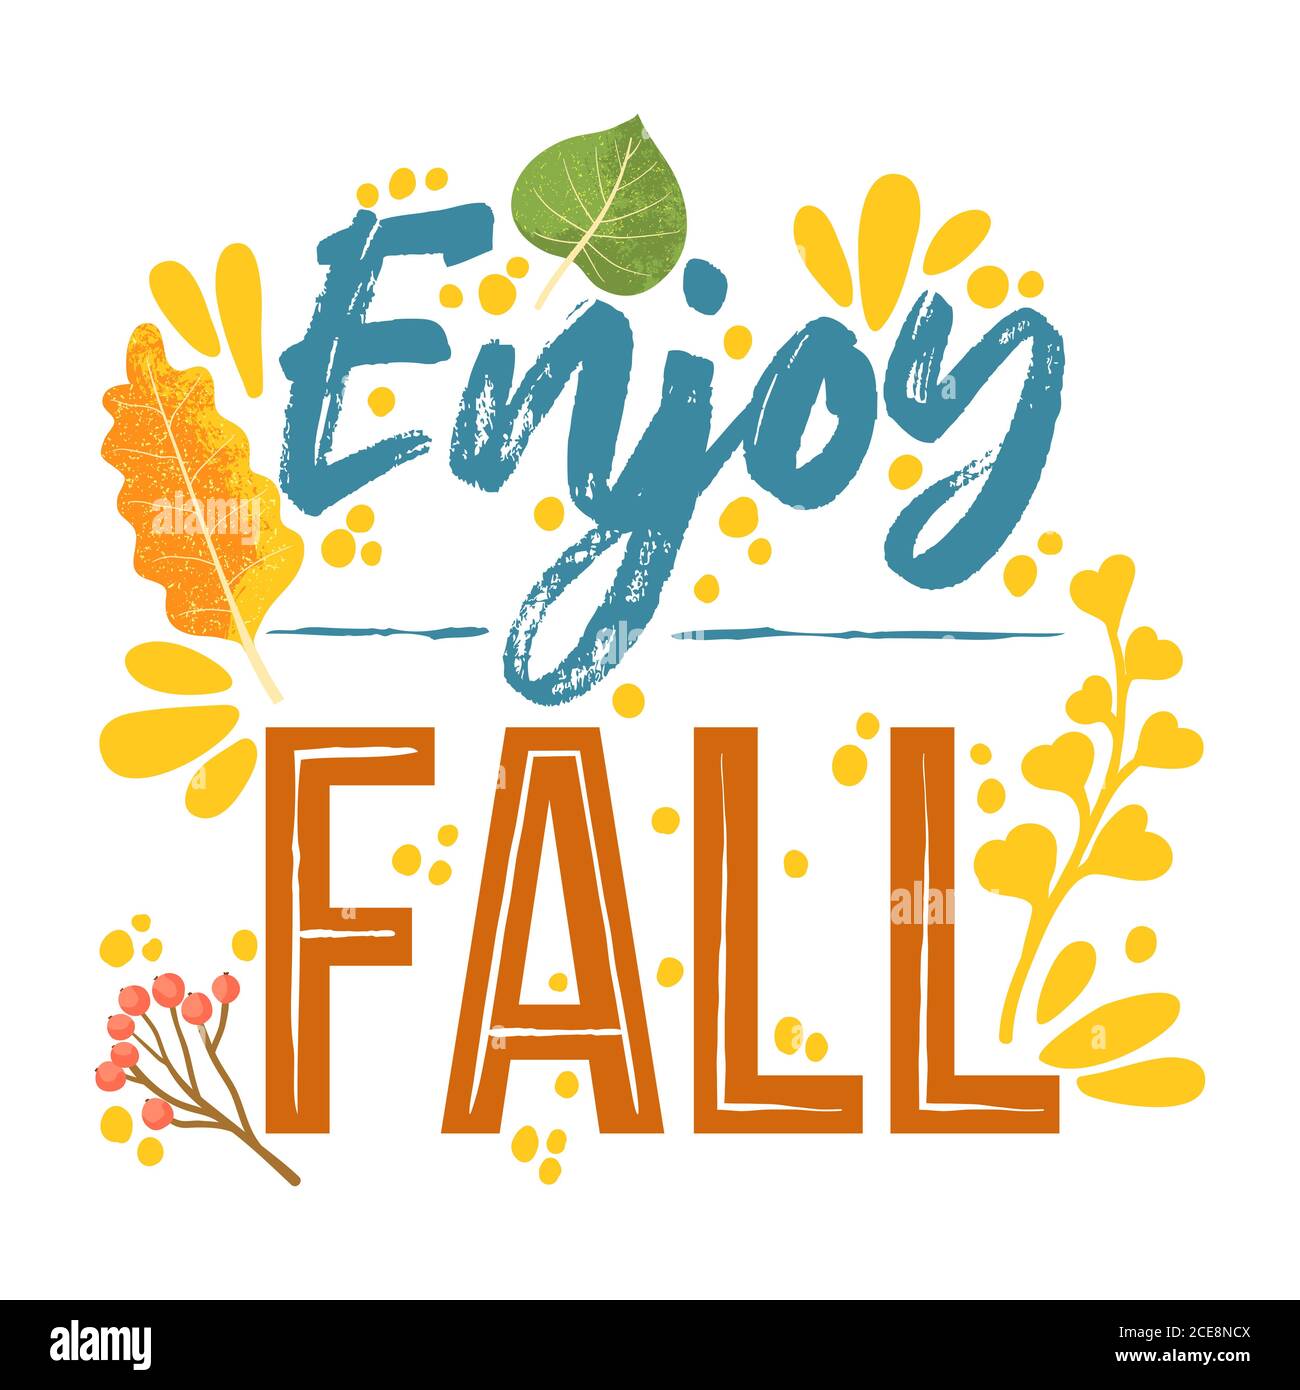 Genießen Sie Herbst - Herbst Typografie Zitate mit Herbst Elemente. Vektor-Zitate mit Herbstblättern, Zweig und Beeren. Isoliert auf weißem Hintergrund. Stock Vektor